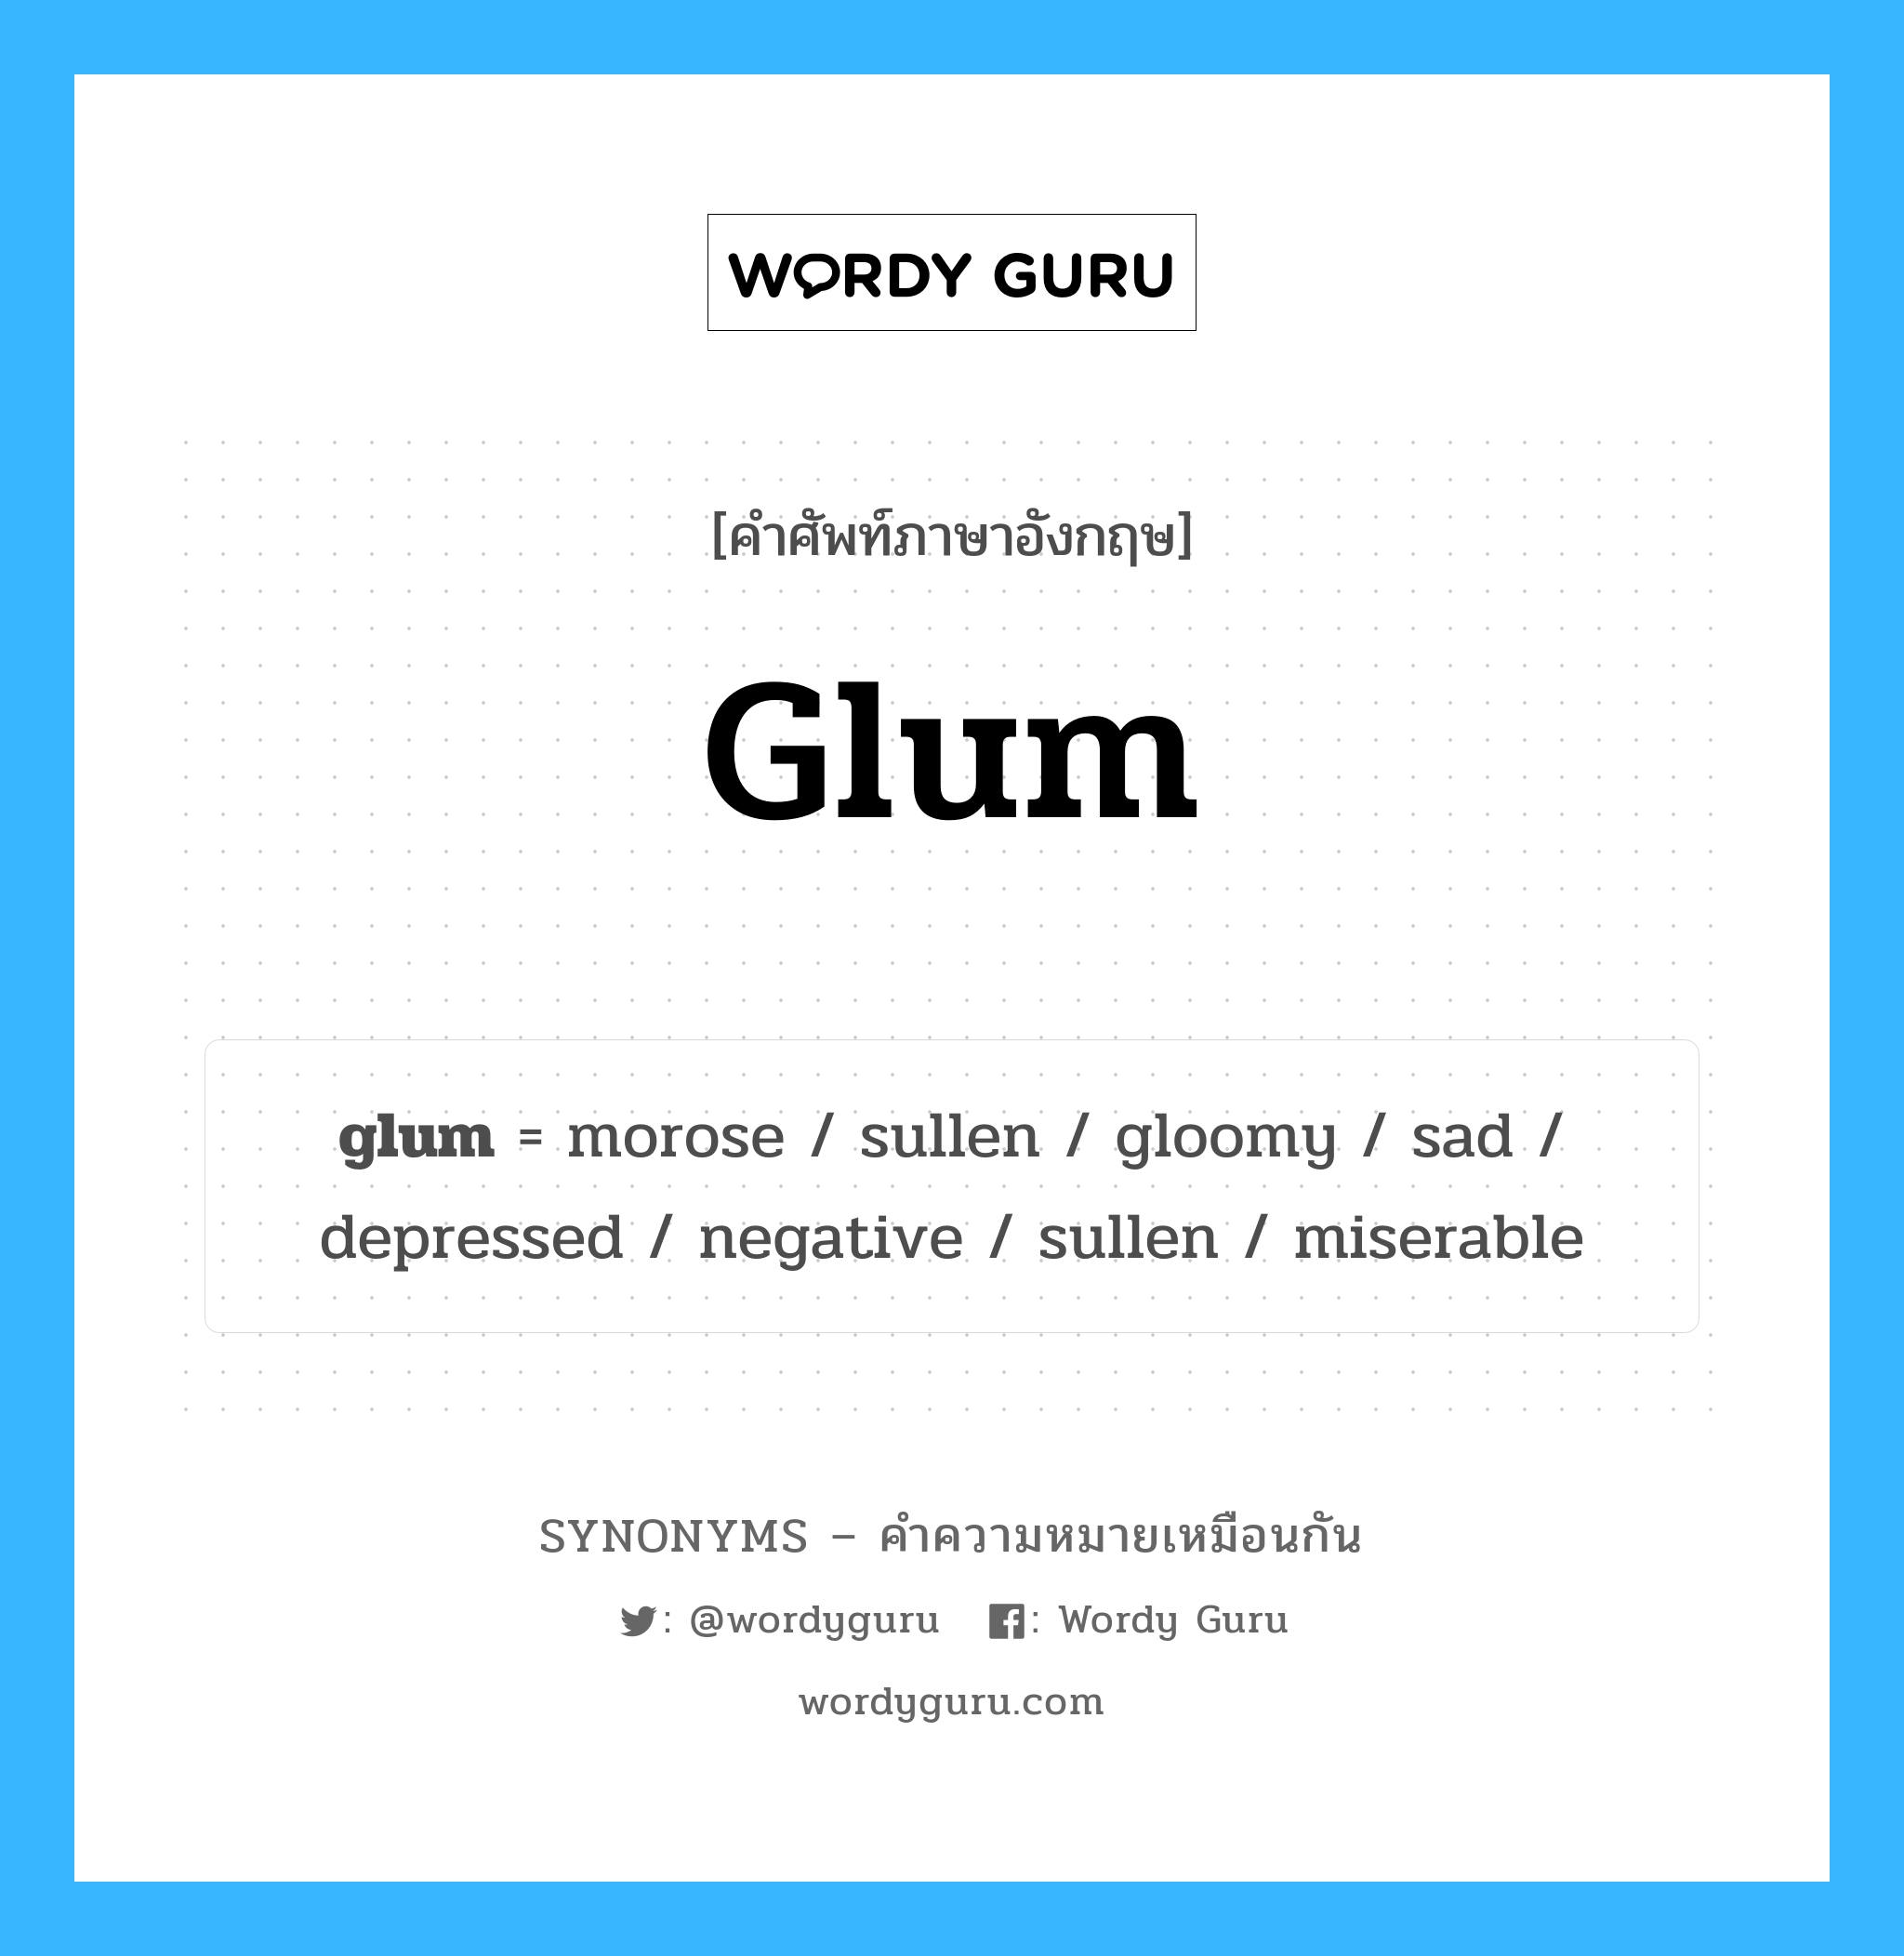 gloomy เป็นหนึ่งใน glum และมีคำอื่น ๆ อีกดังนี้, คำศัพท์ภาษาอังกฤษ gloomy ความหมายคล้ายกันกับ glum แปลว่า มืดมน หมวด glum